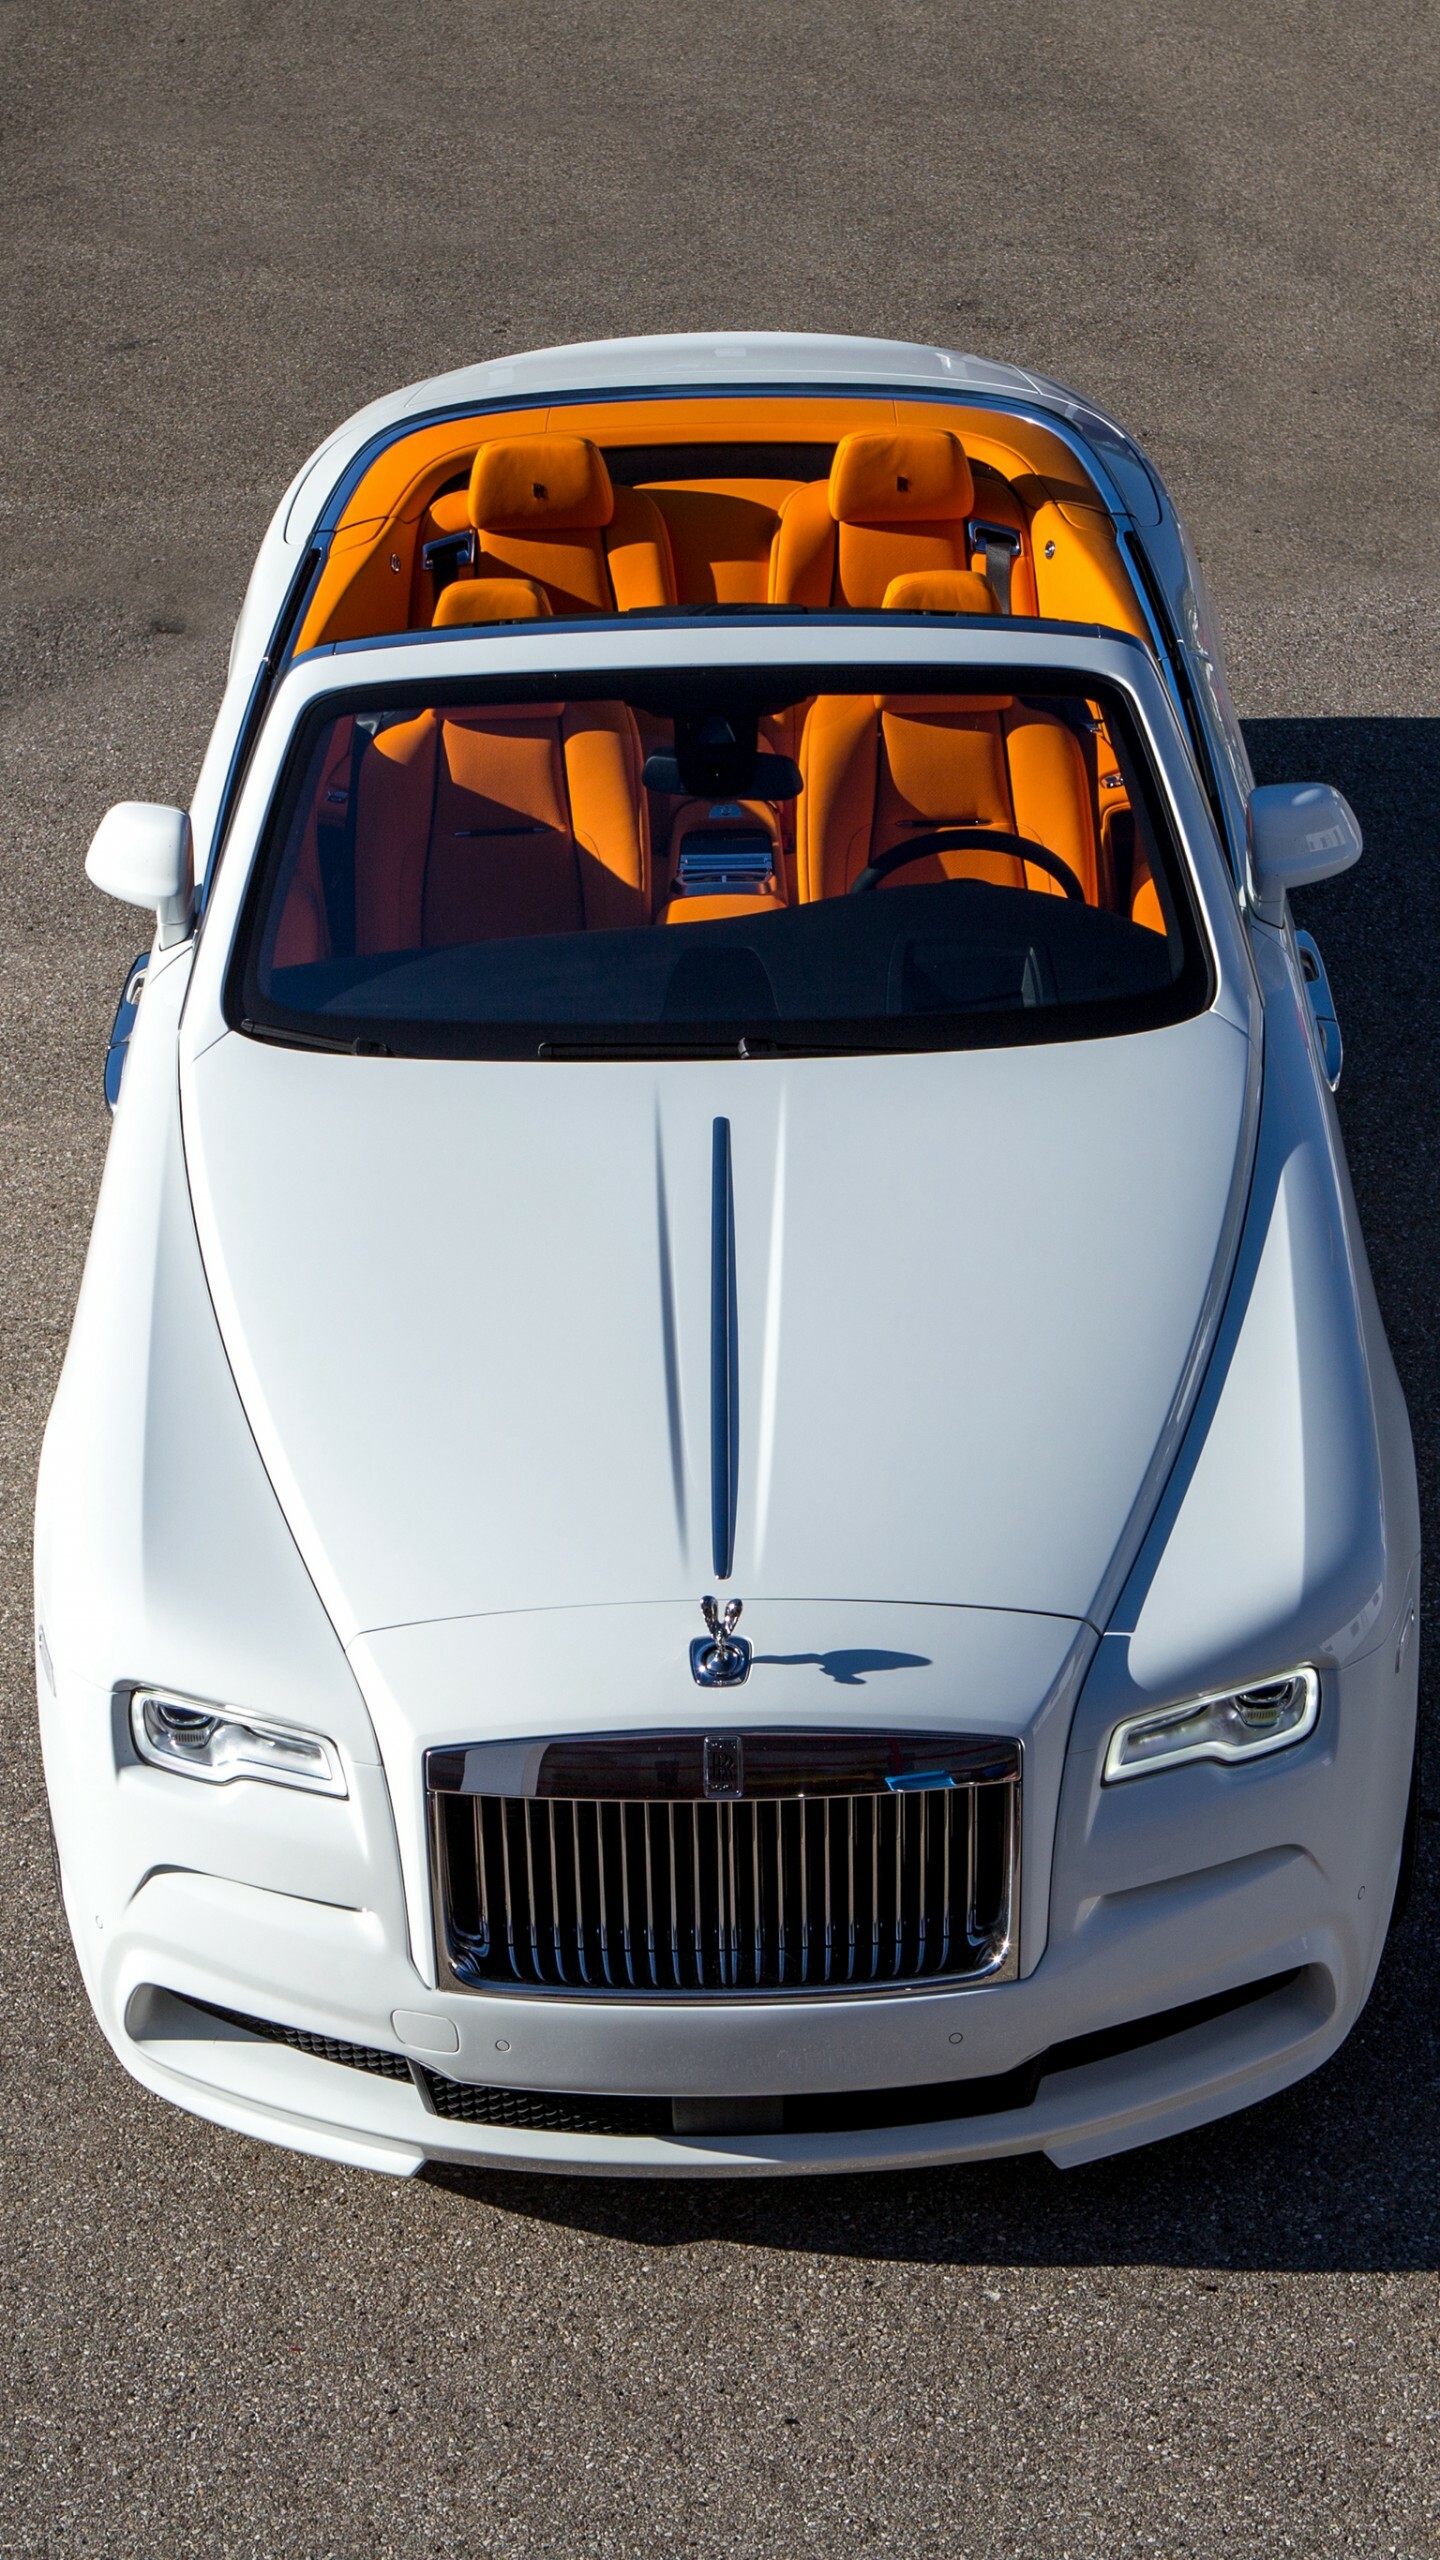 Rolls-Royce: Model Dawn, Luxury cars, British automotive brand. 1440x2560 HD Background.